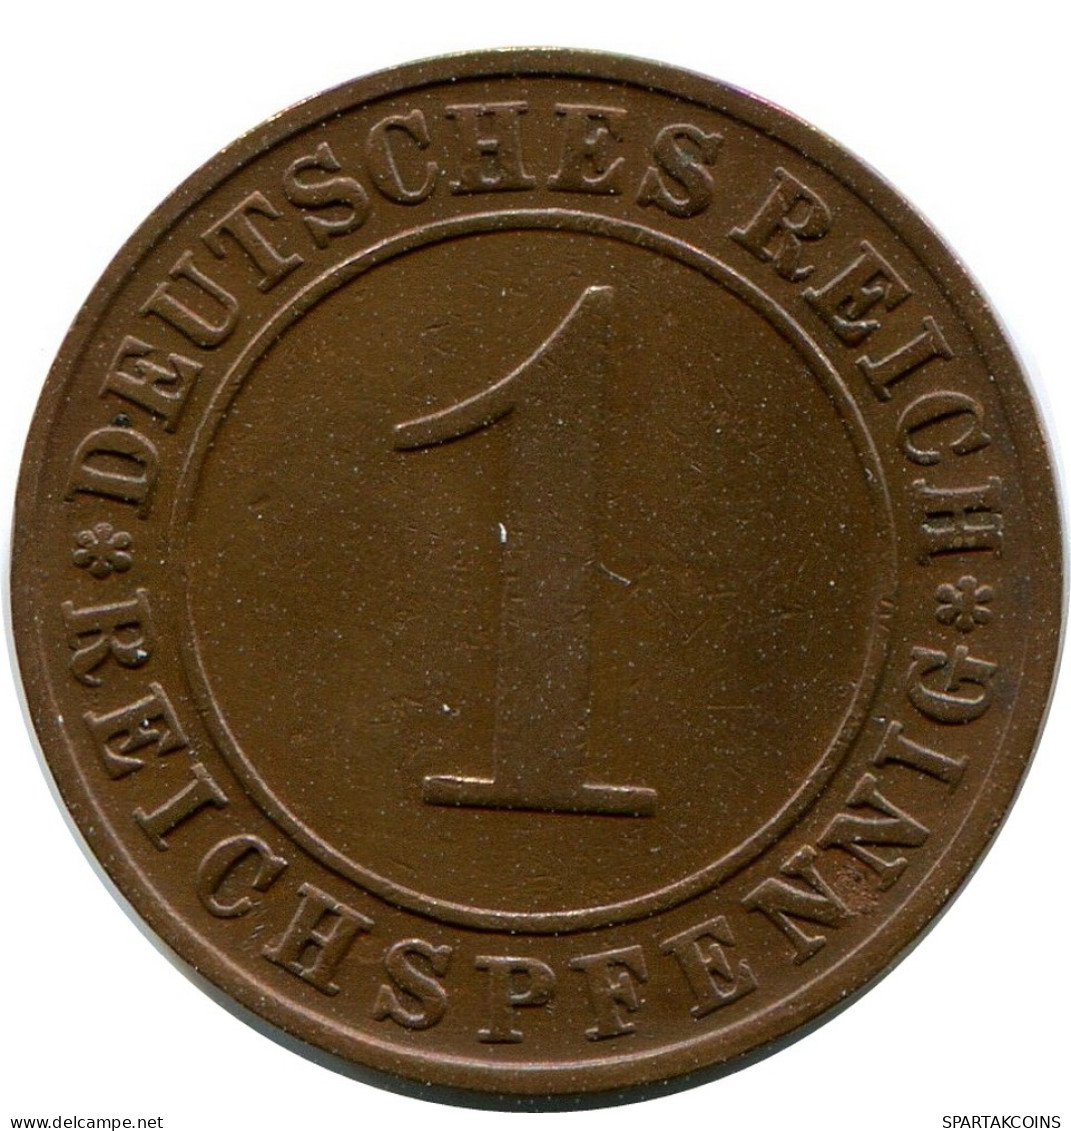 1 REICHSPFENNIG 1927 D ALLEMAGNE Pièce GERMANY #DB778.F - 1 Rentenpfennig & 1 Reichspfennig